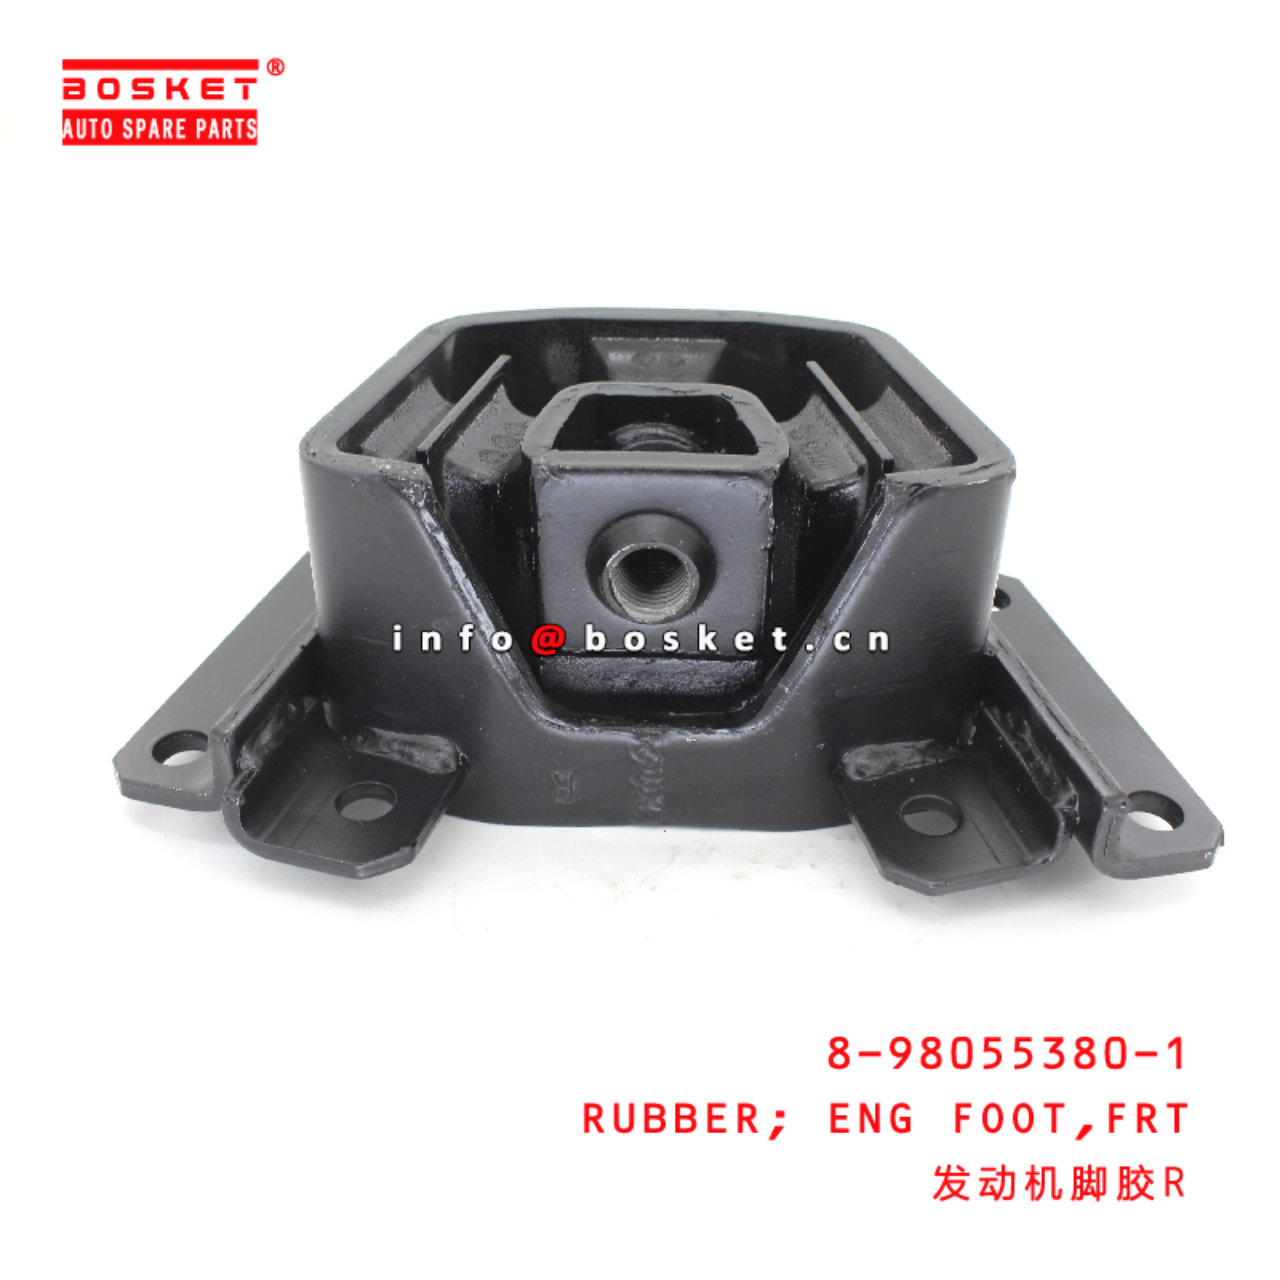 8-98055380-1 Front Engine Foot Rubber suitable for ISUZU VC46 6UZ1 8980553801